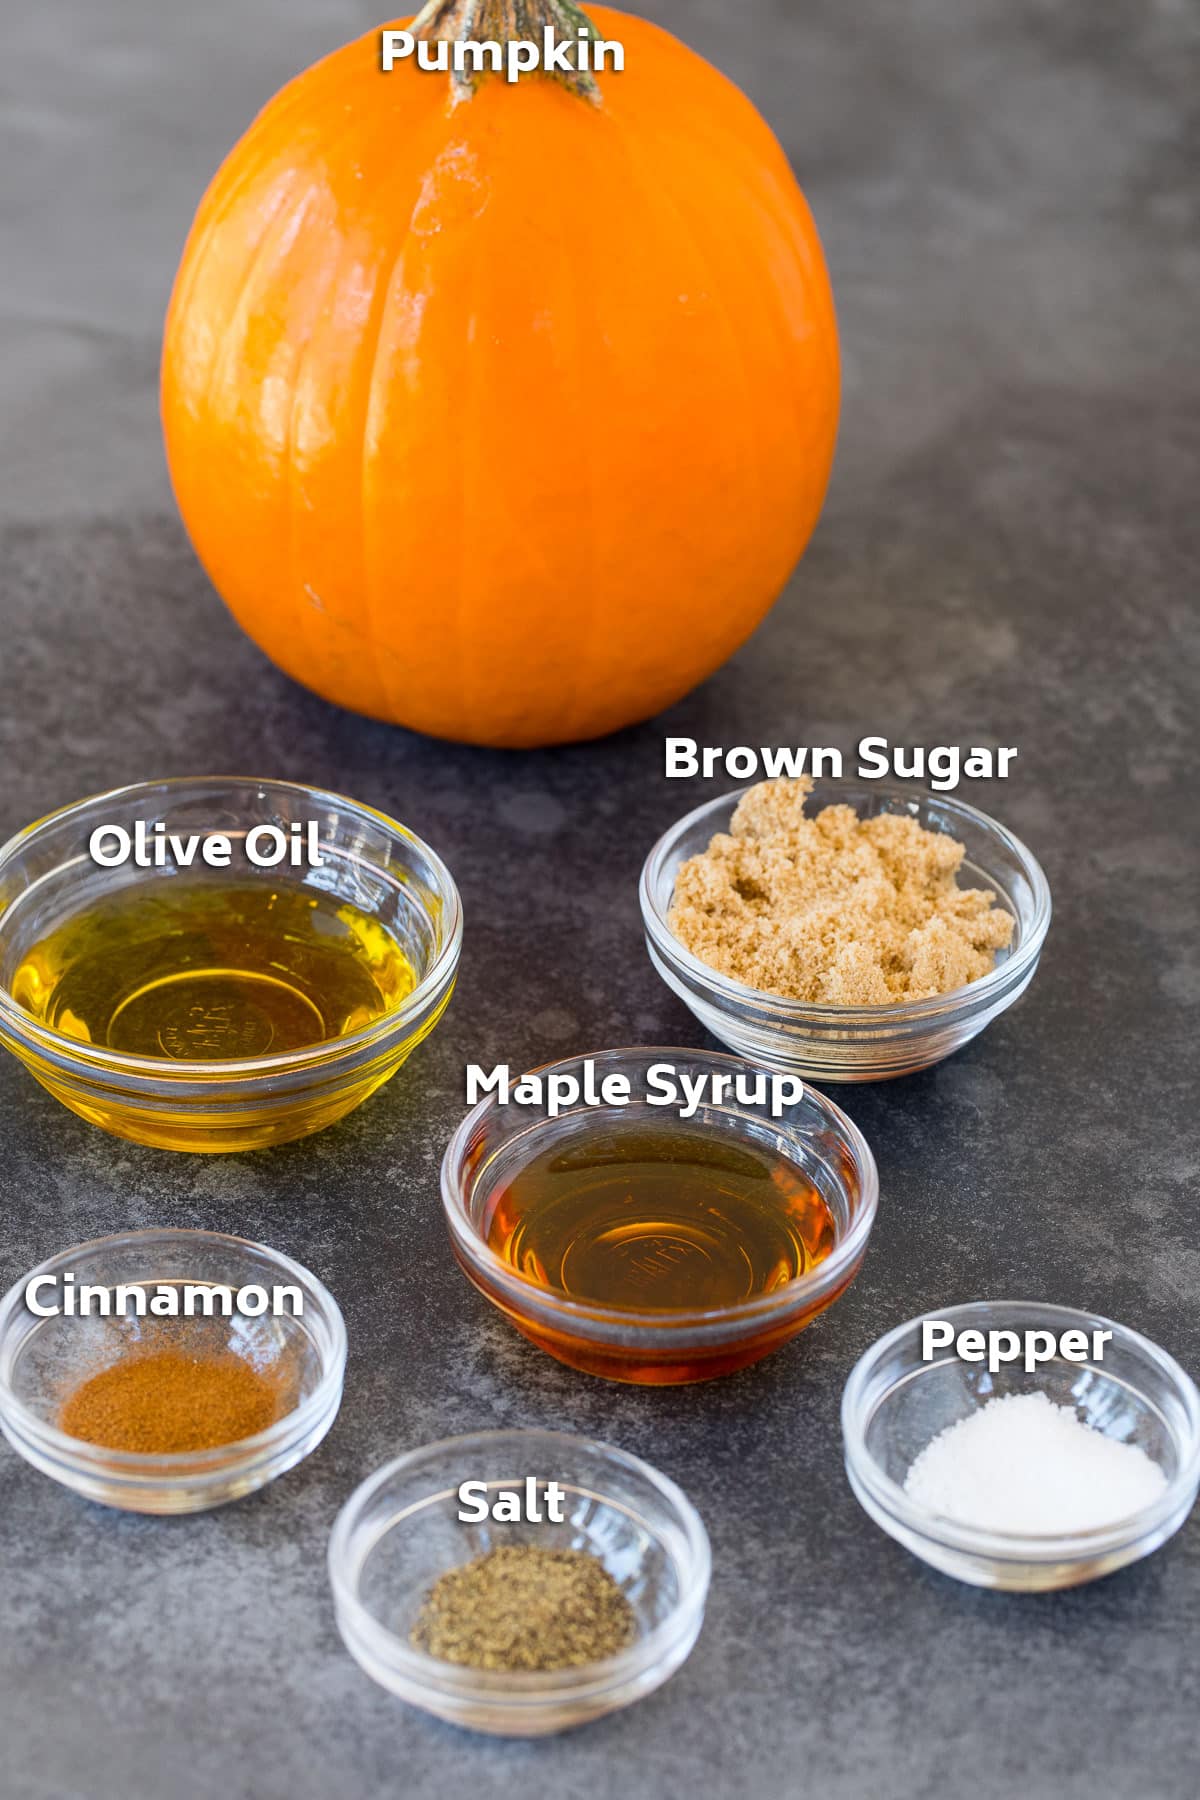 Ingredients including pumpkin, olive oil, sugar and seasonings.